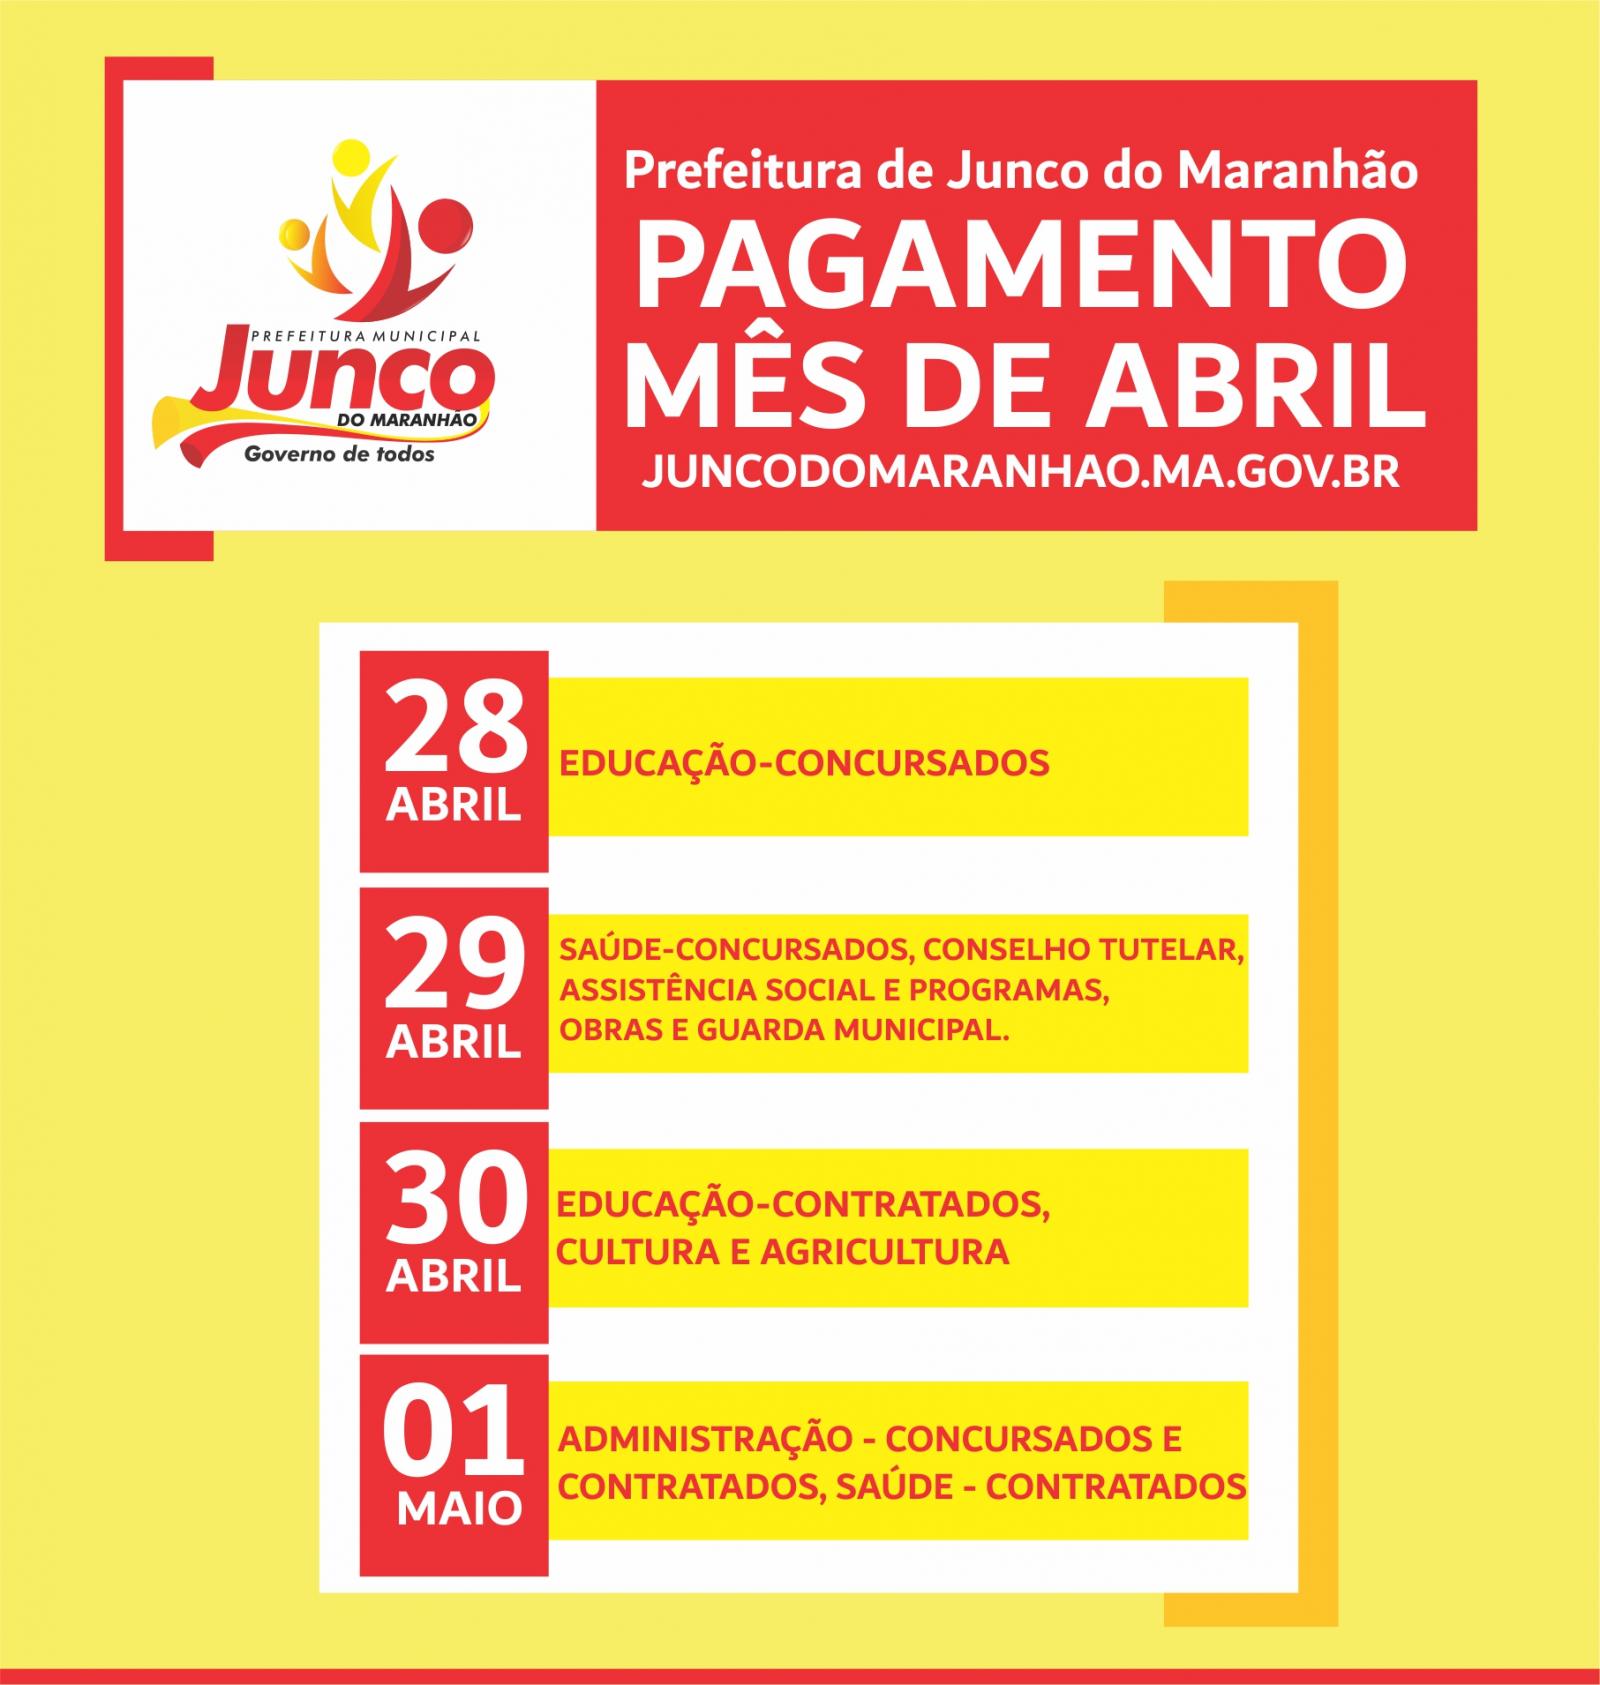 Confira detalhes sobre o pagamento de abril da Prefeitura de Junco do Maranhão